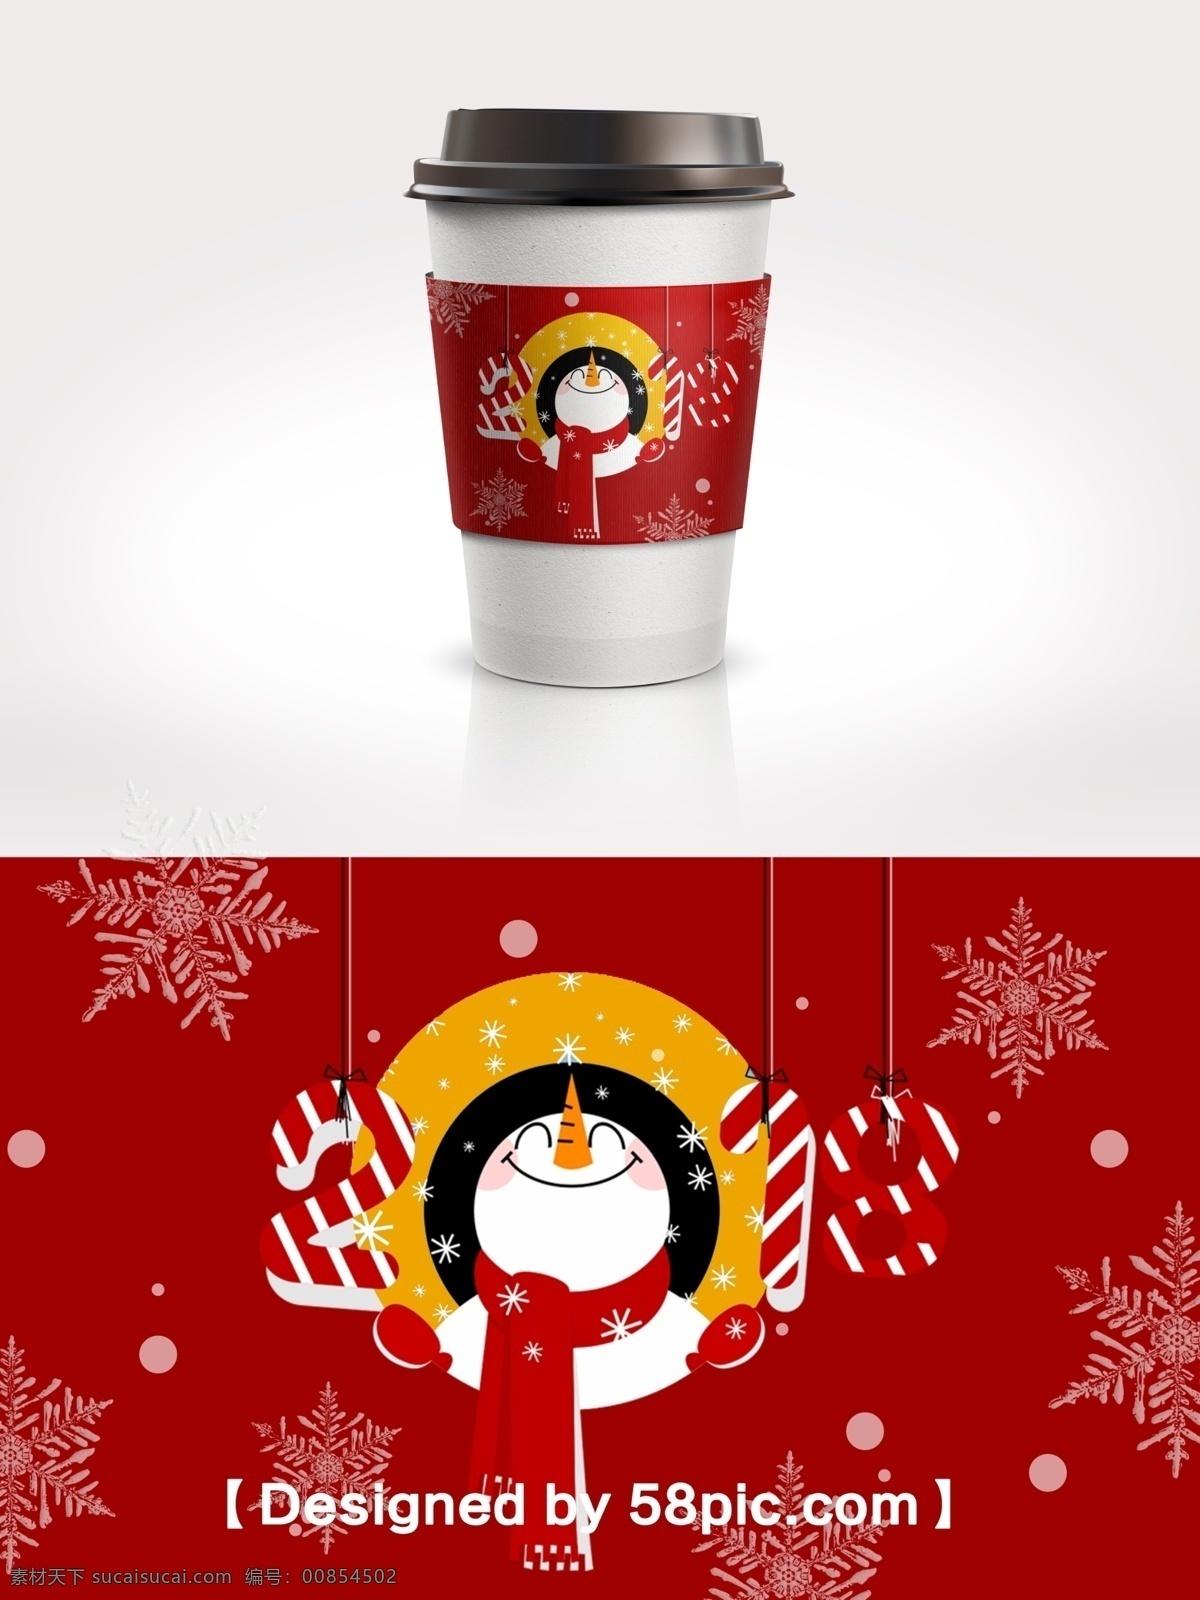 2018 圣诞节 雪花 雪人 节日 包装 咖啡杯 套 2018新年 psd素材 广告设计模版 红色 节日包装 咖啡杯套设计 雪花素材 雪人素材